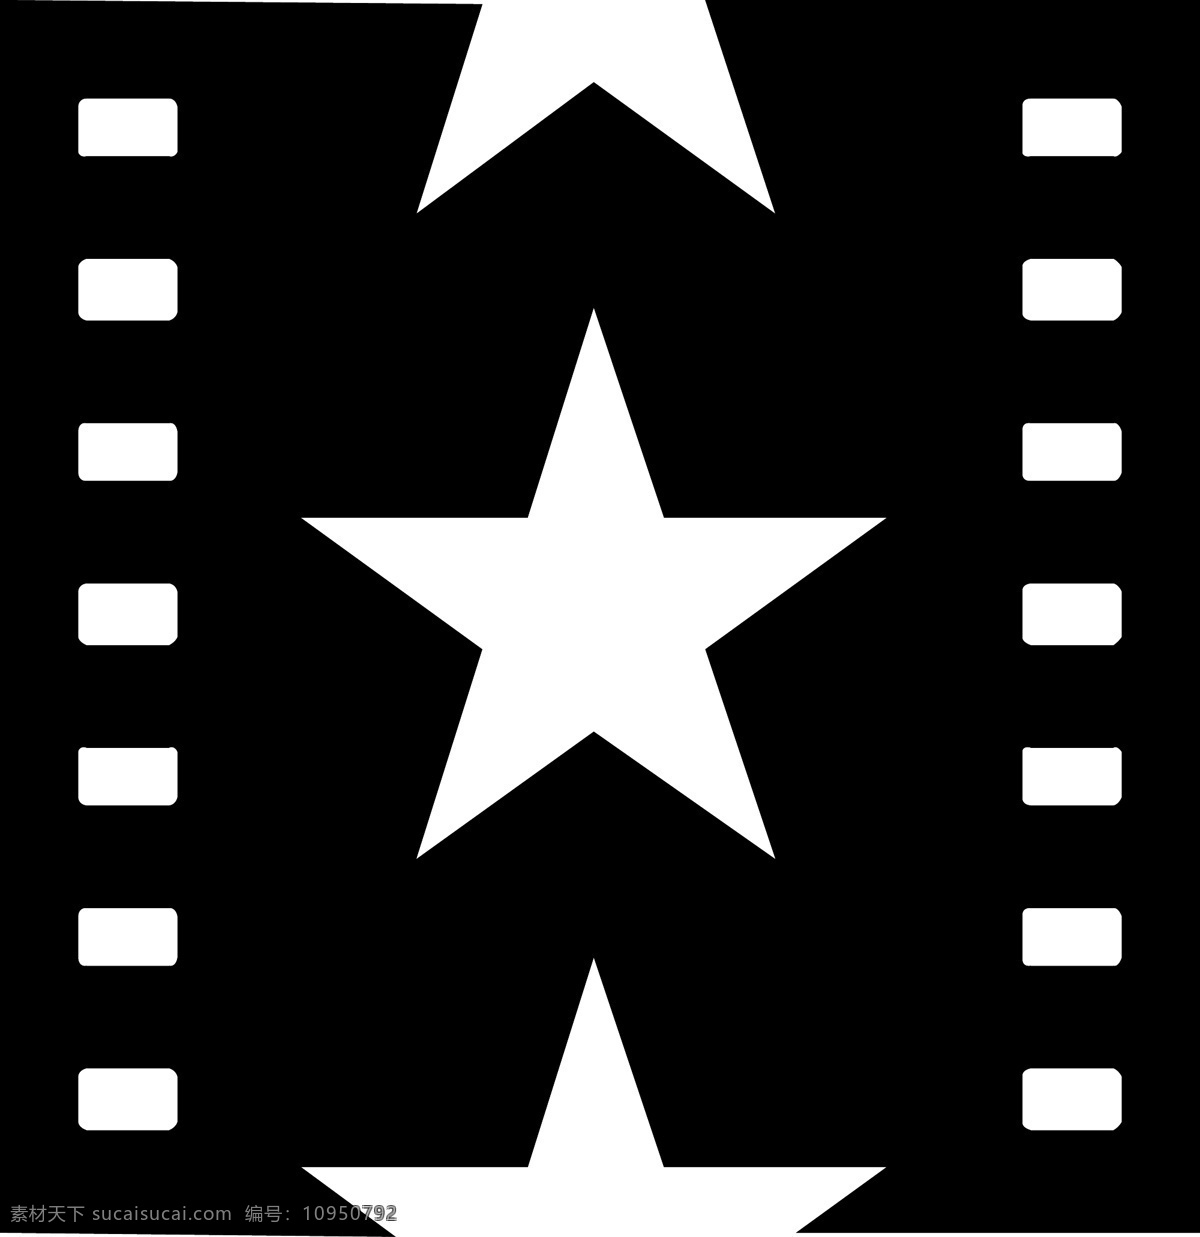 美国 电影 研究院 矢量标志下载 免费矢量标识 商标 品牌标识 标识 矢量 免费 品牌 公司 黑色